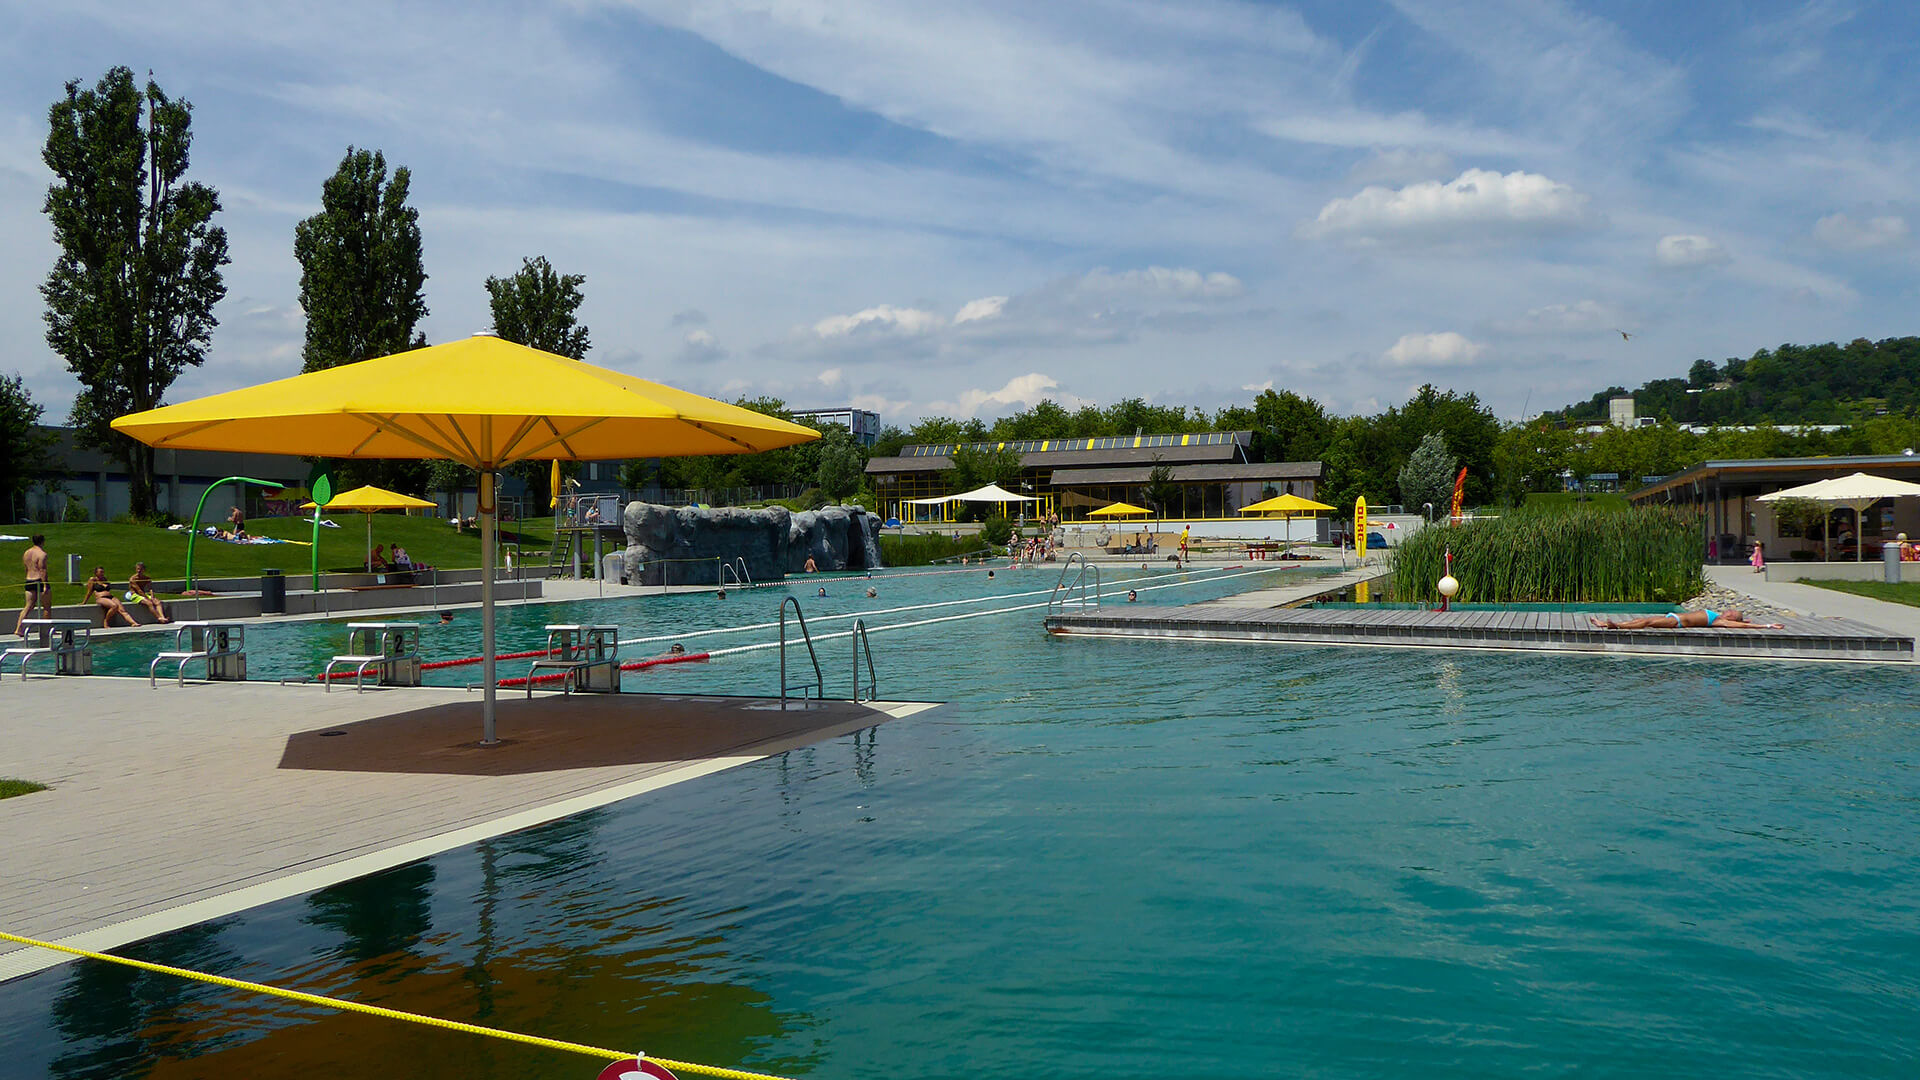 Freiluft-Schwimmbecken mit Sonnenschirmen